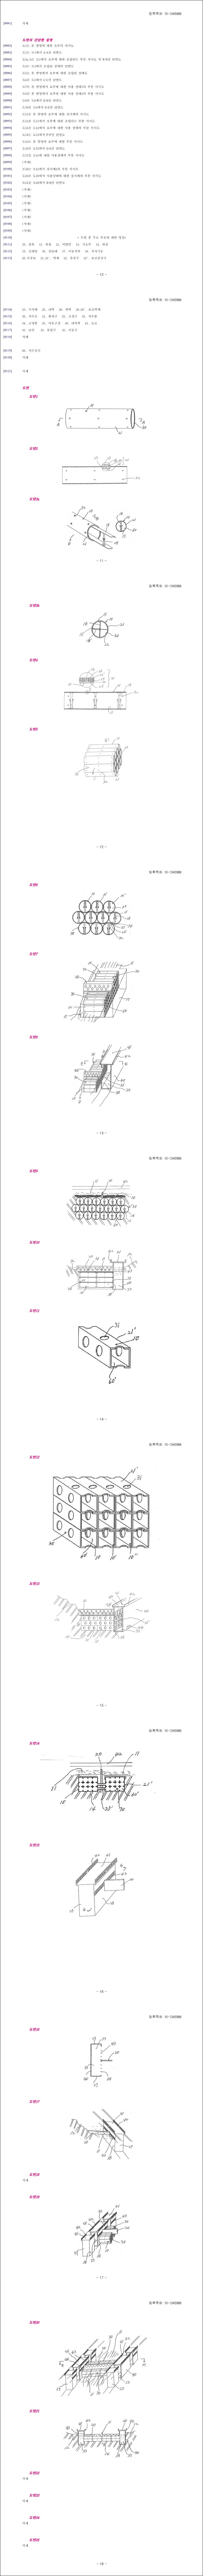 특허 제10-1345988호(하천의 저수조용 블럭, 민승기, 